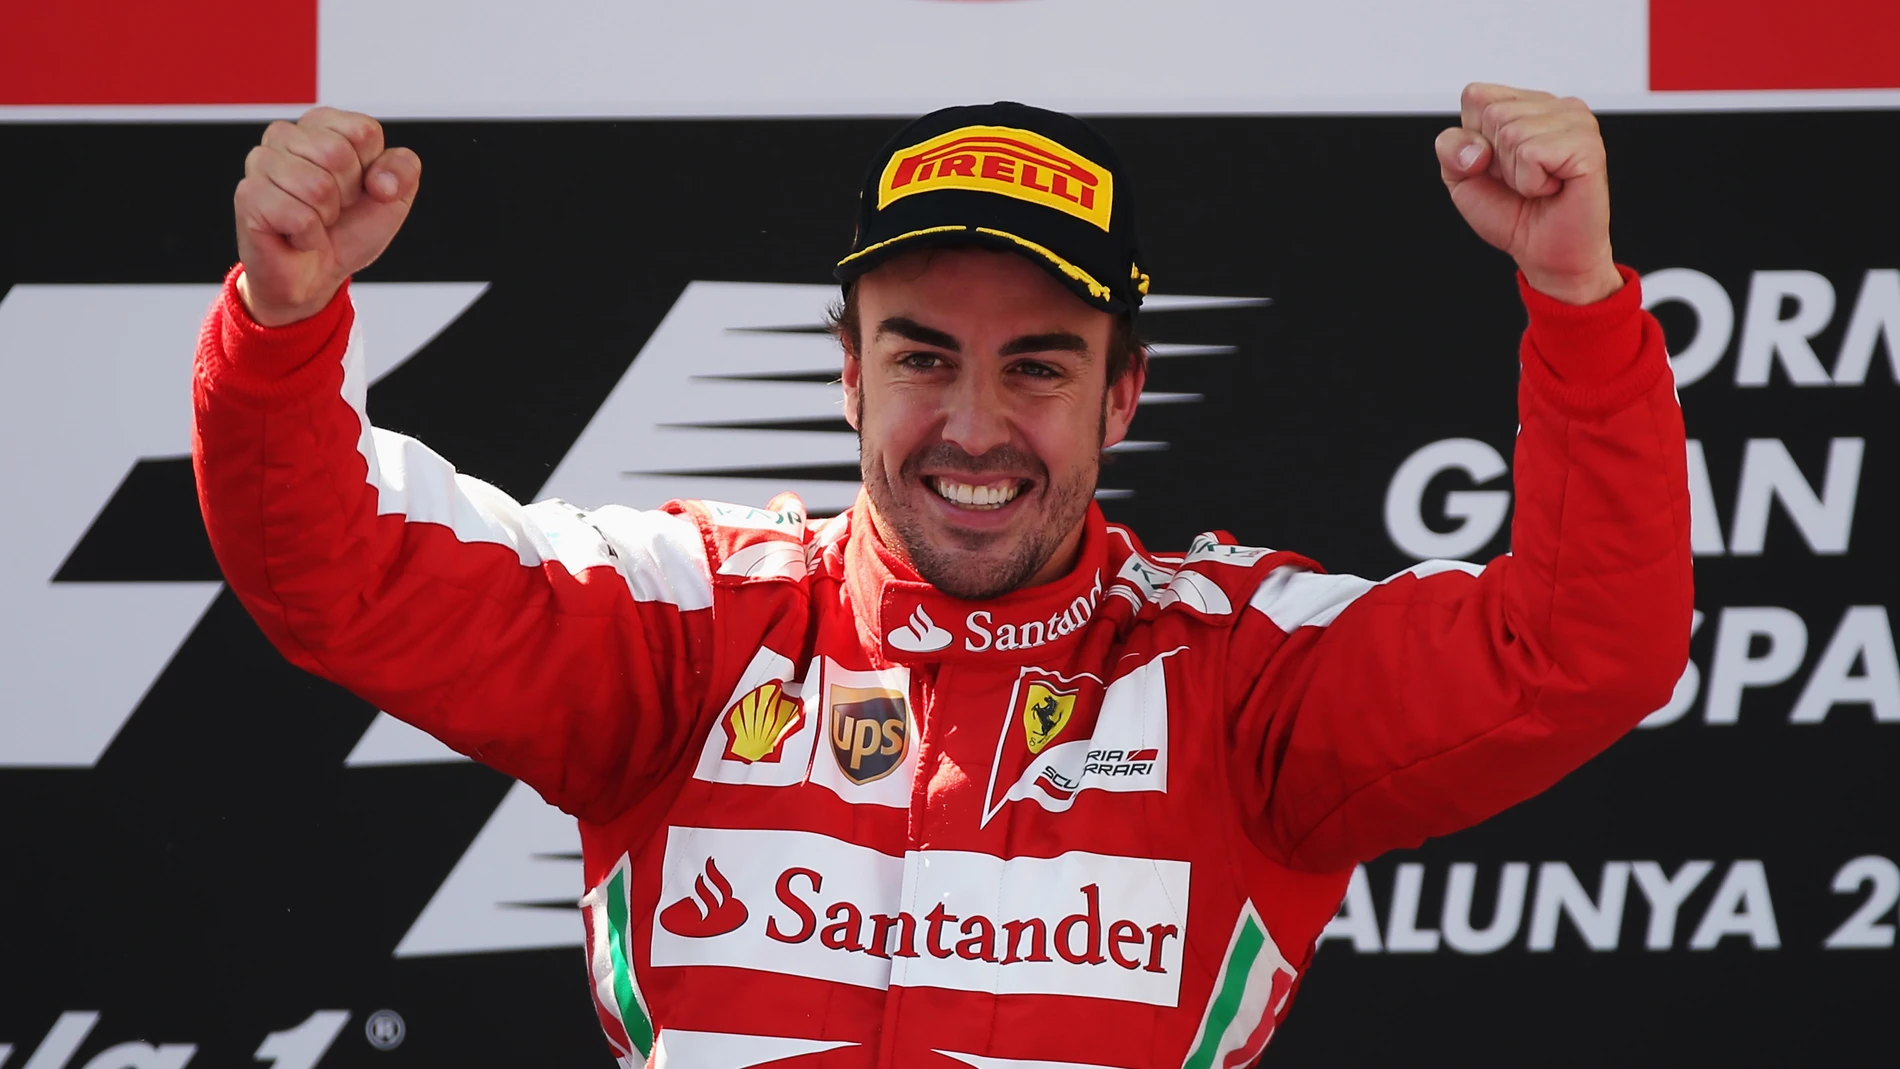 Fernando Alonso celebra una victoria con Ferrari